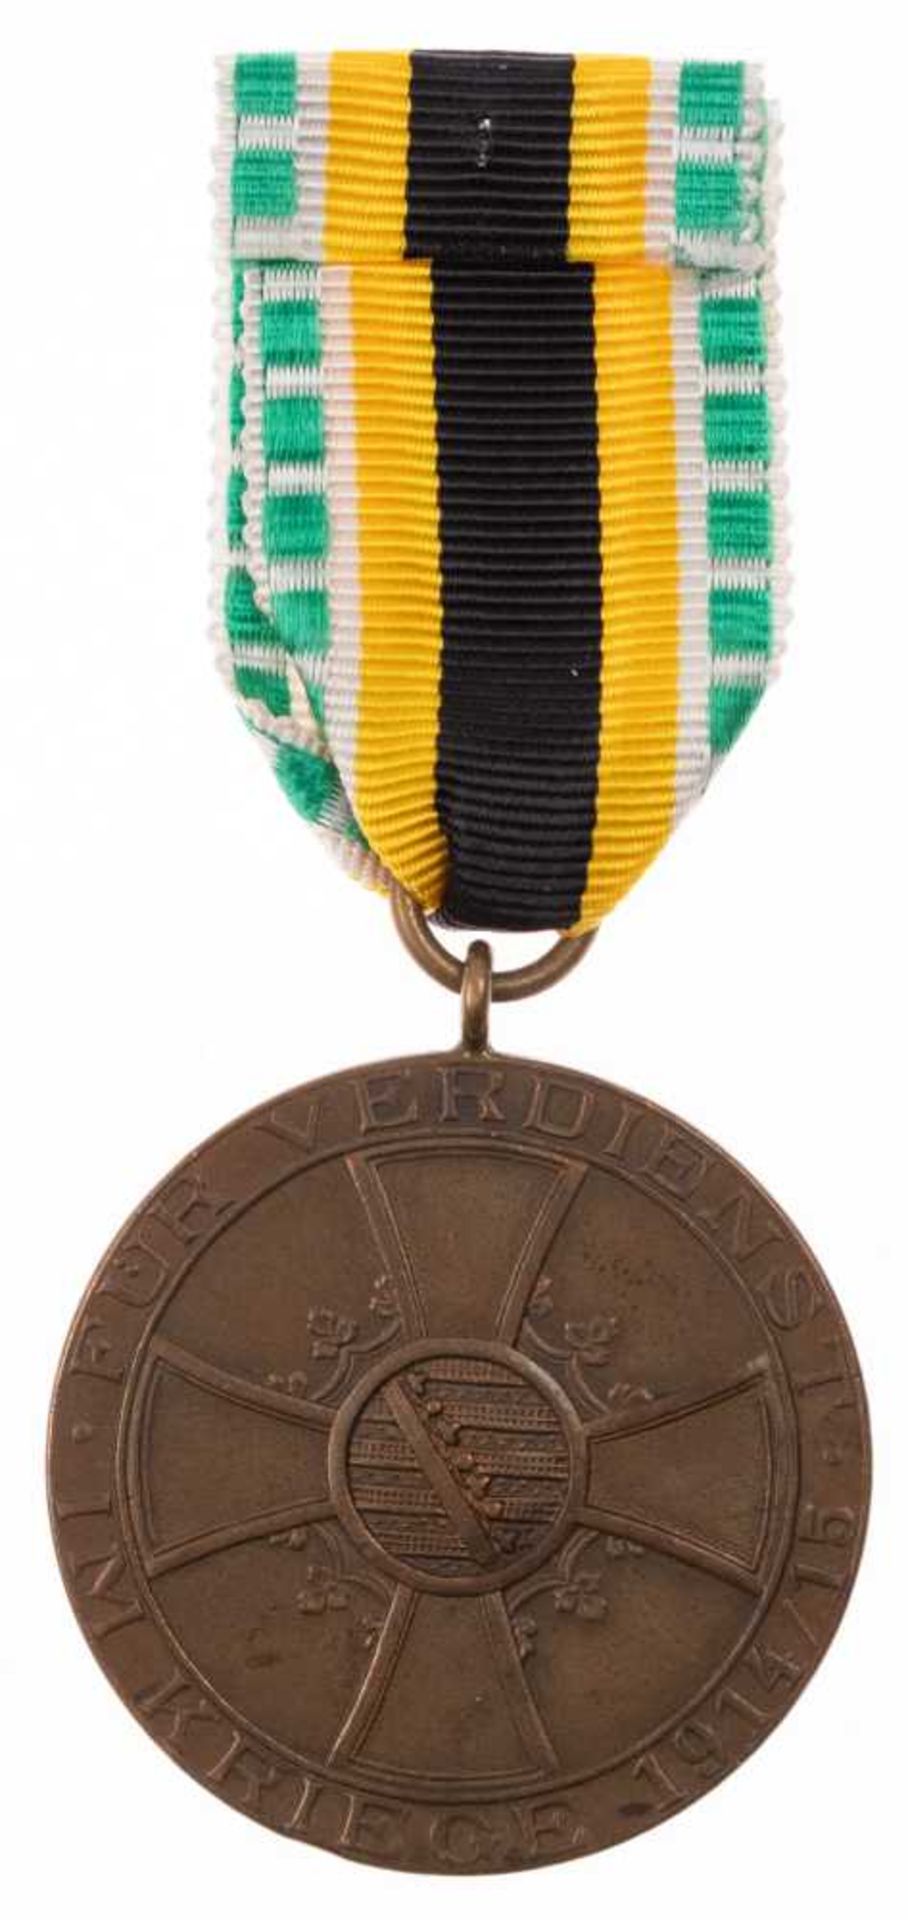 Sachsen-Meiningen, Medaille für Verdienst im Kriege, Bonze, am Kämpferband, OEK 2718, Zustand 2. - Bild 2 aus 2